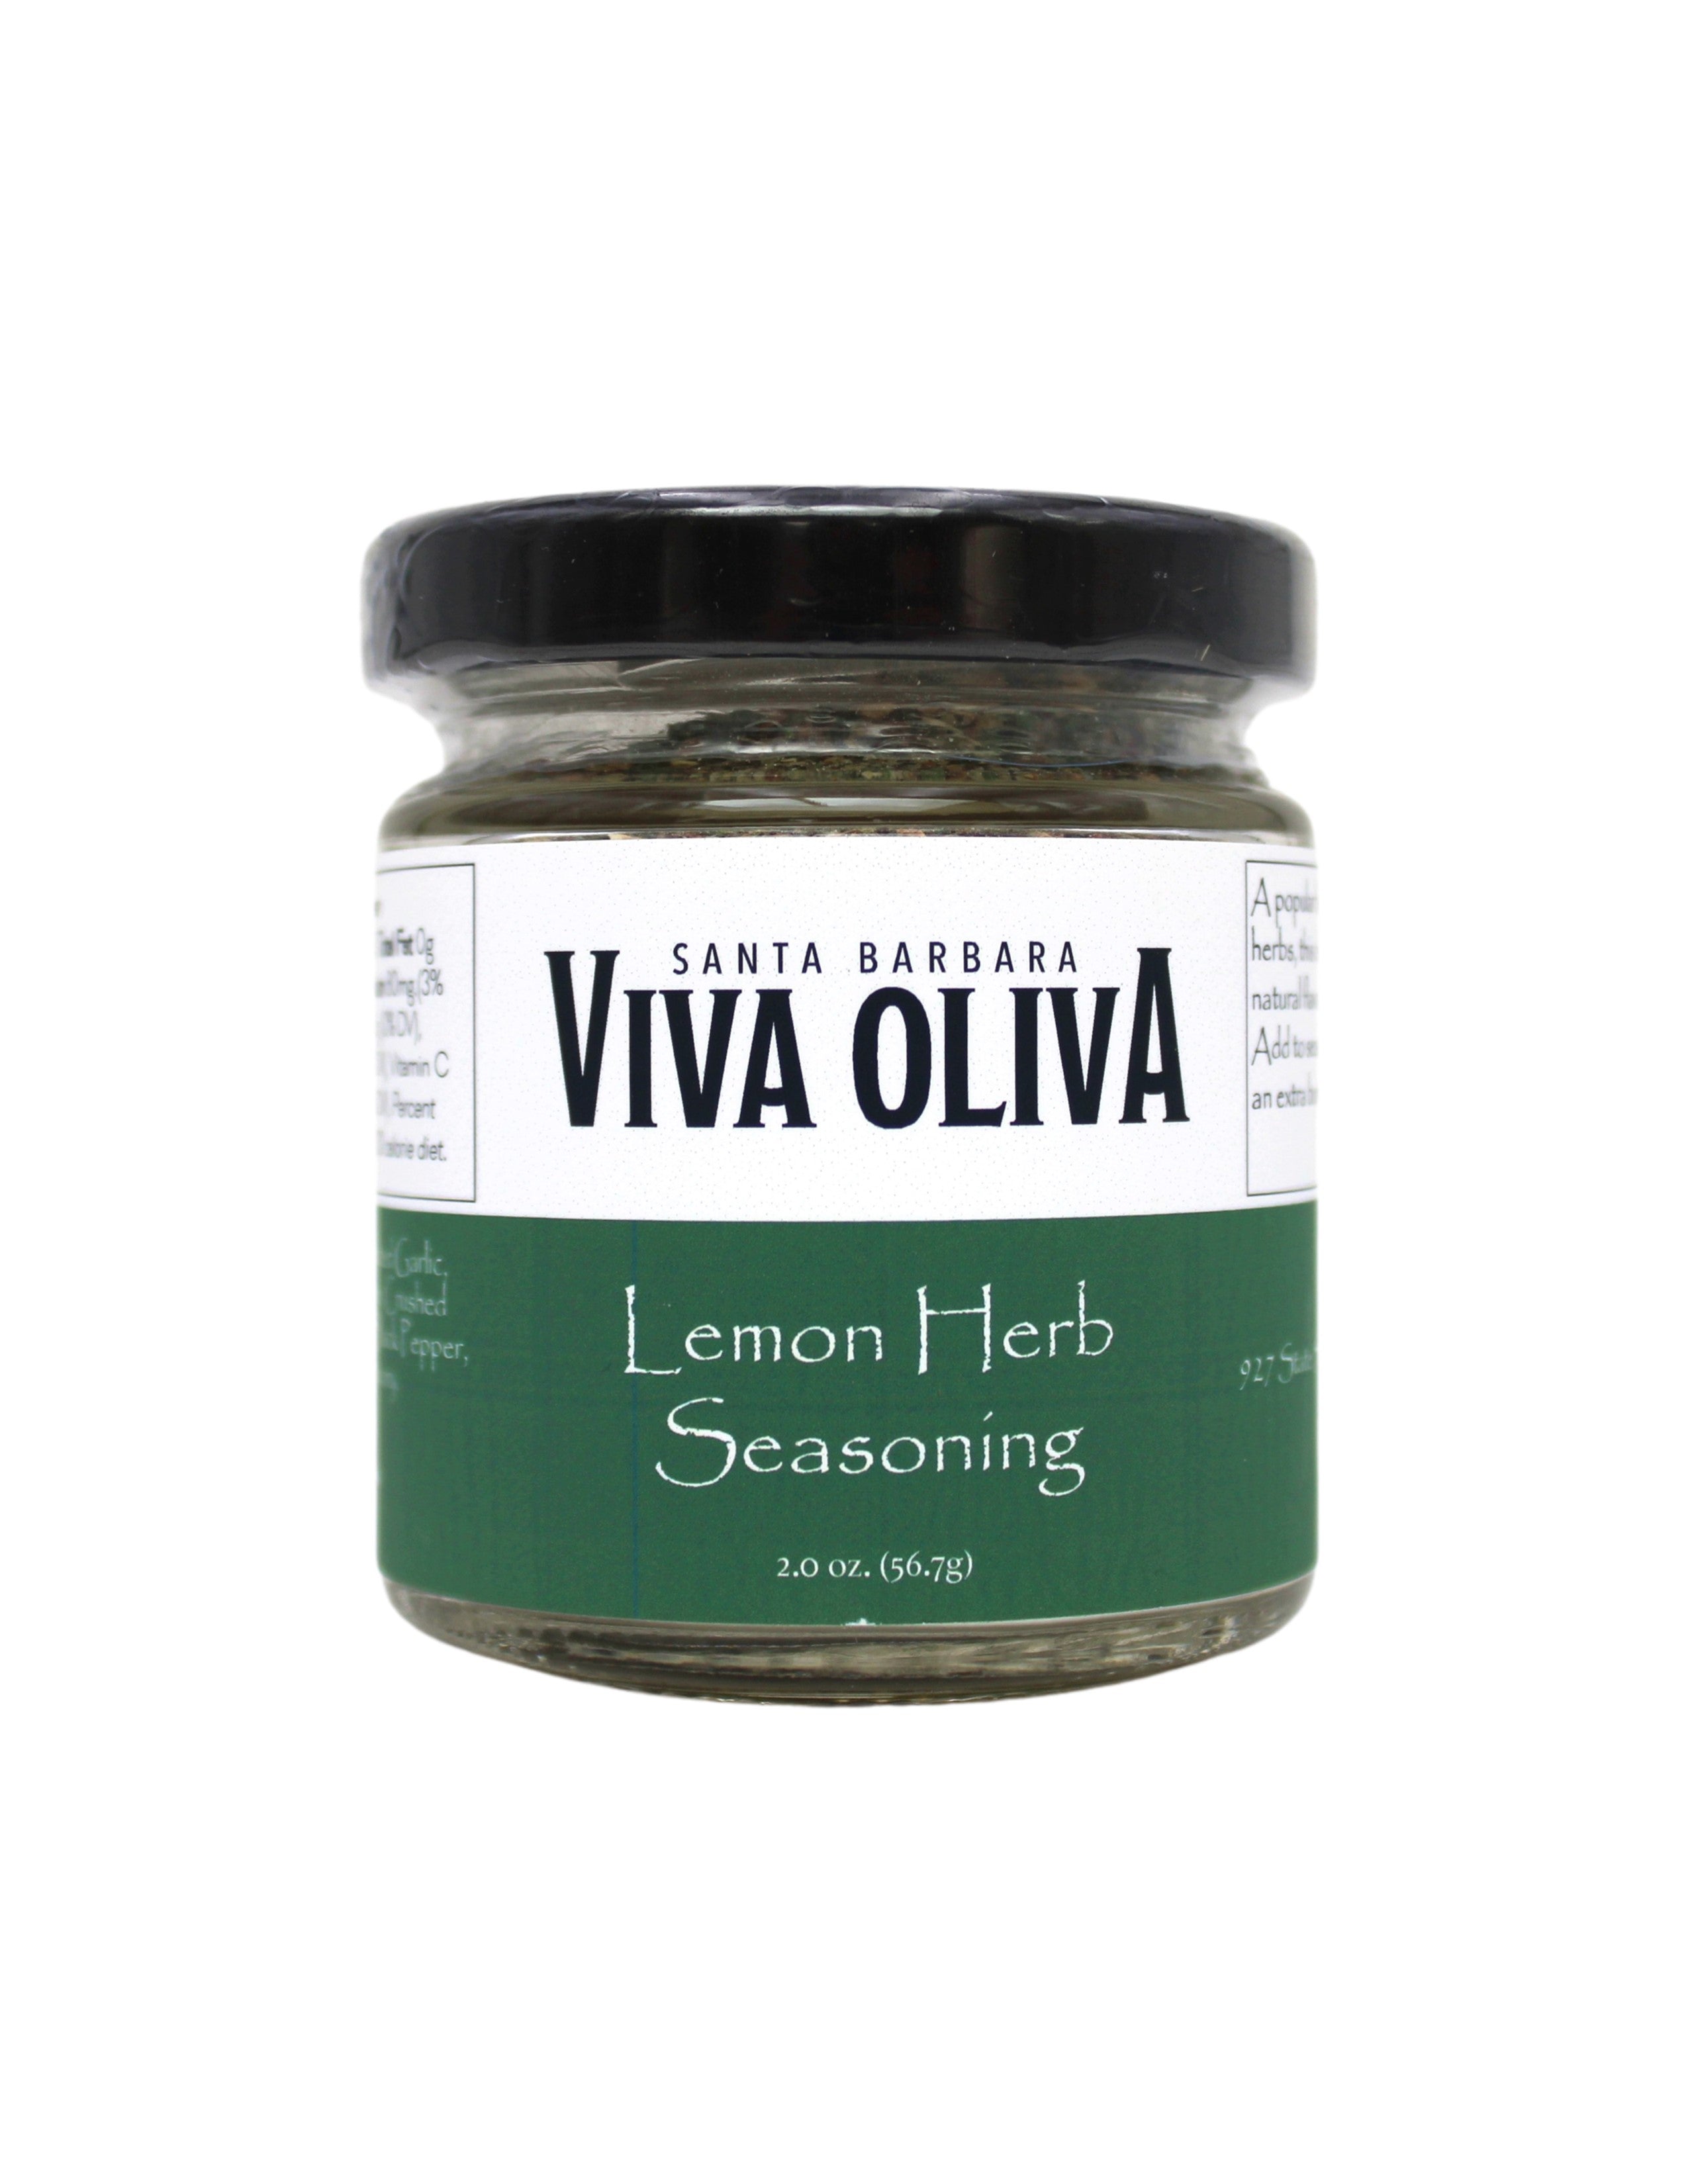 Zesty Lemon Herb Seasoning - Oliva!